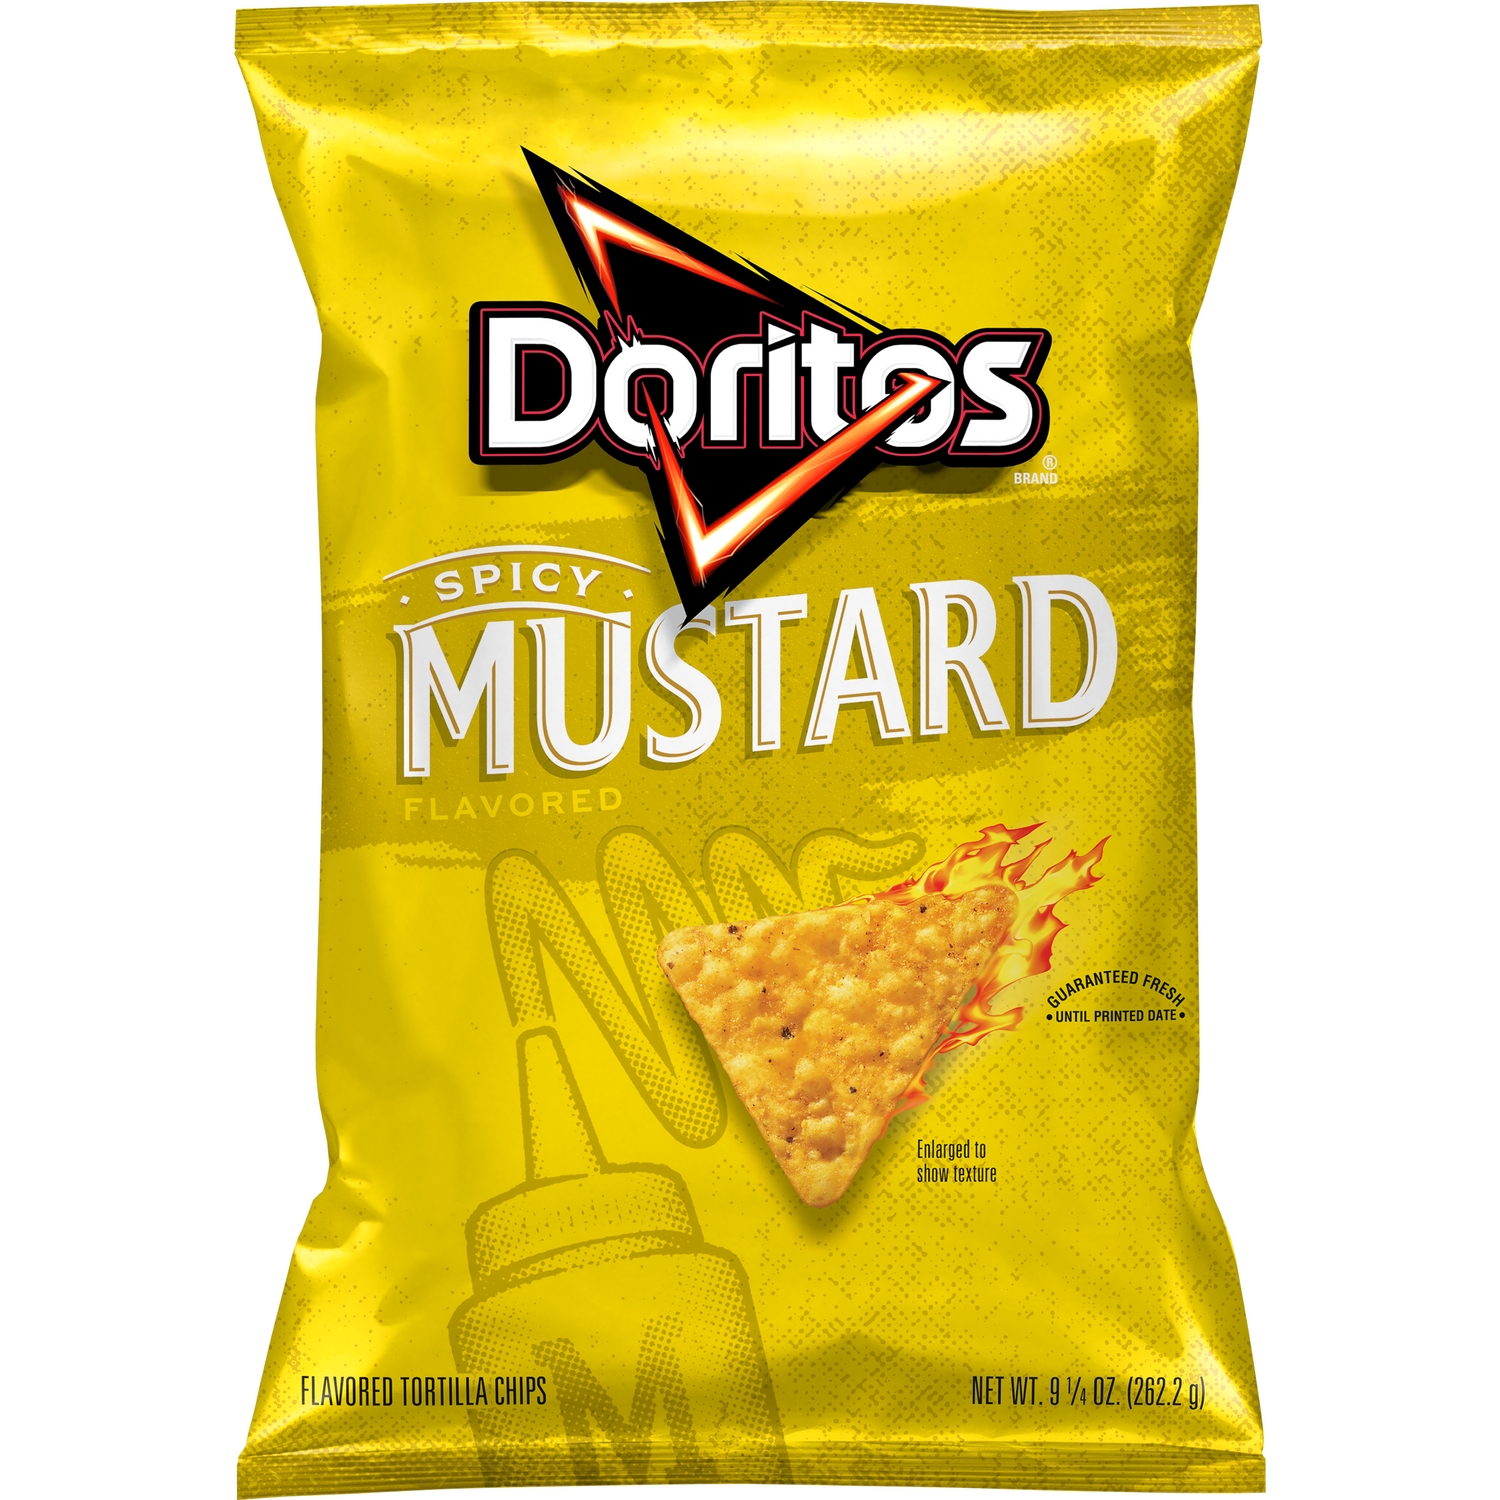 Doritos Mustard